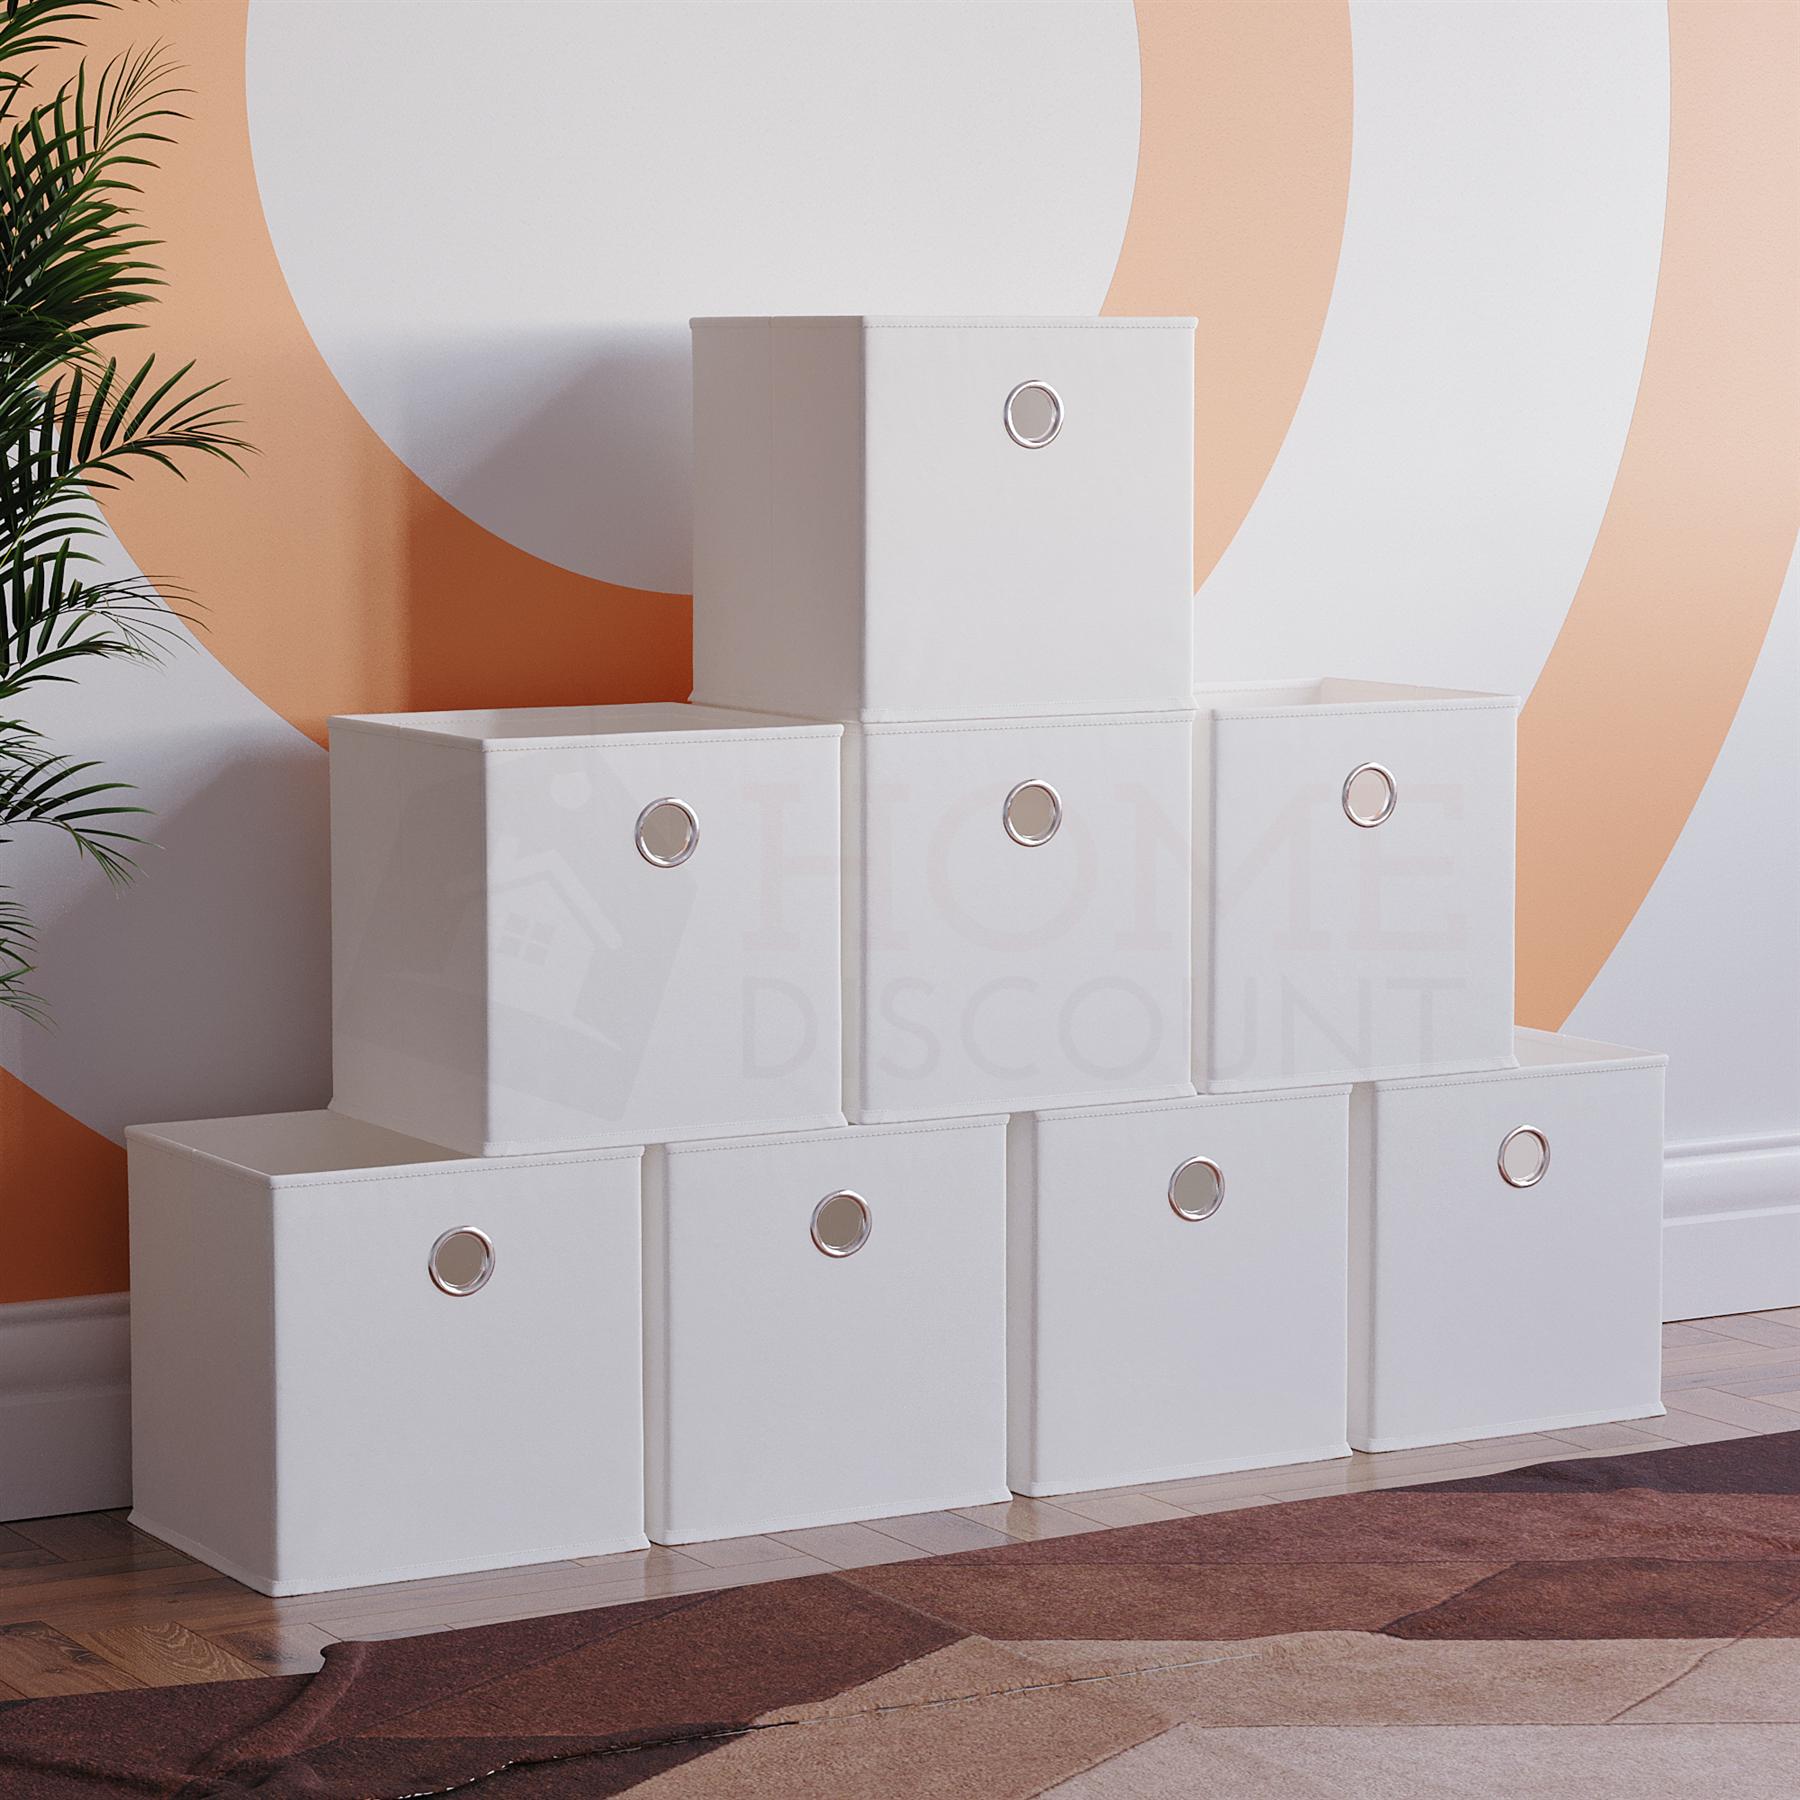 Vida Designs Durham Cube Storage Basket Organizer Set of 8